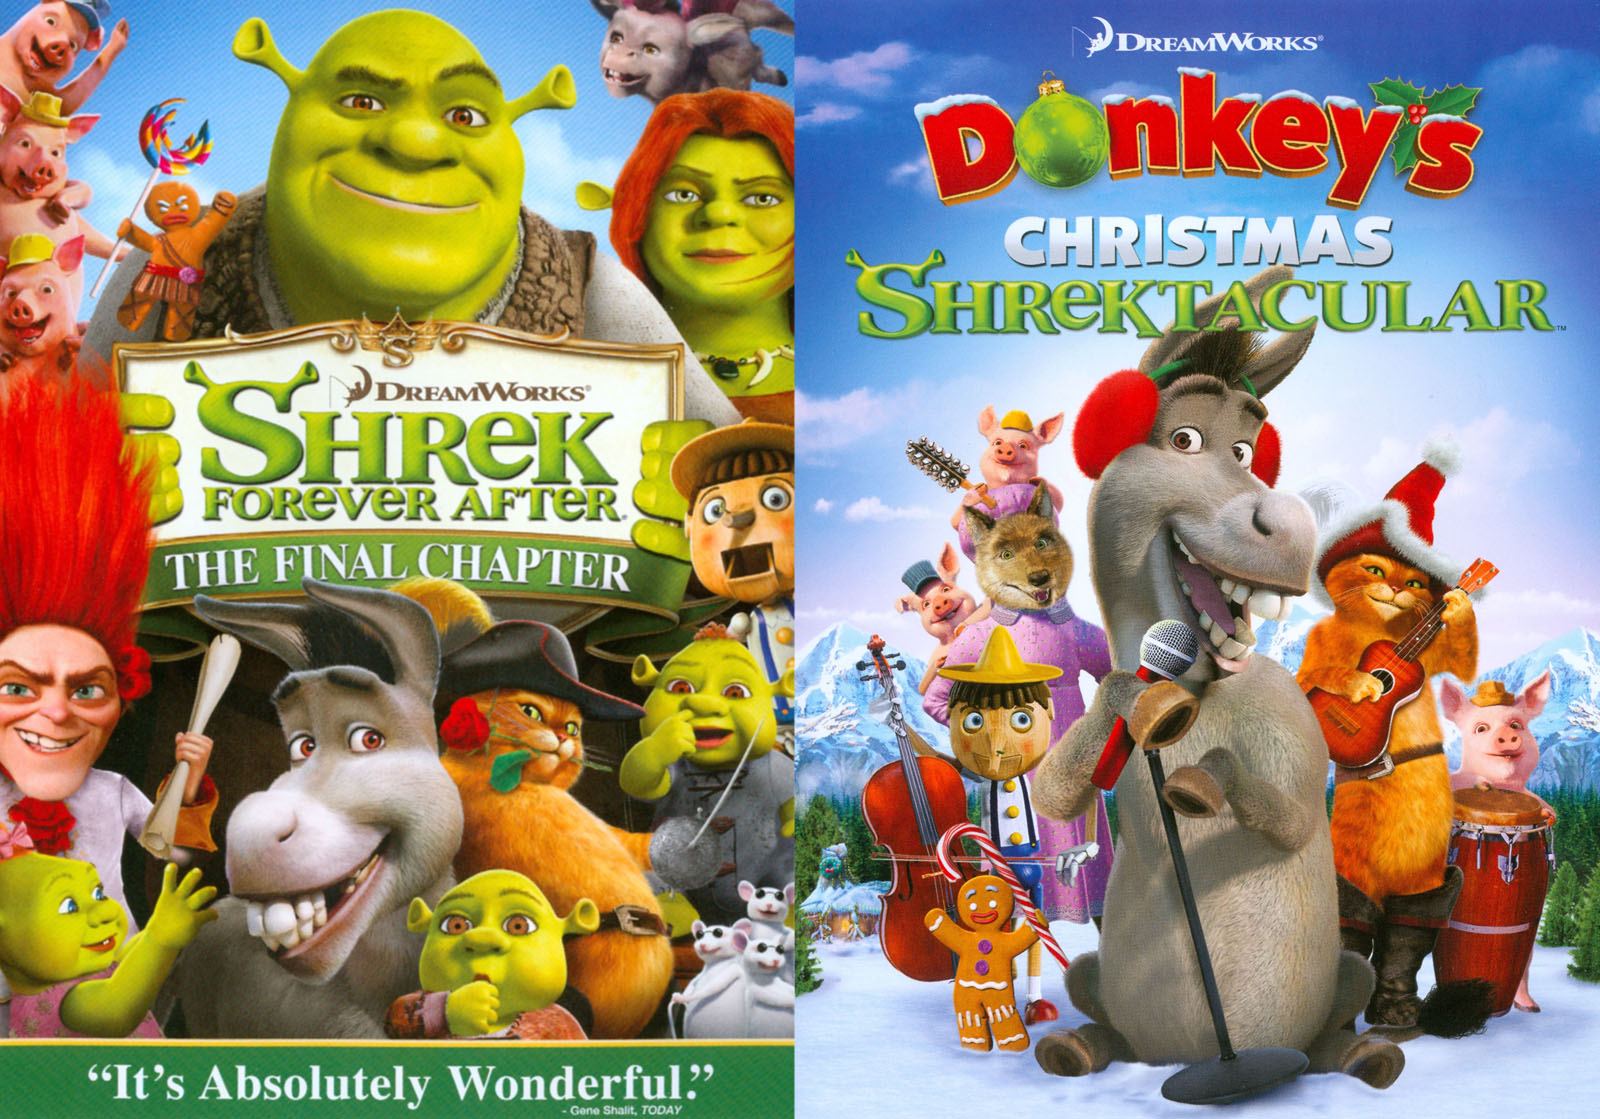 Shrek 4 was a good movie : r/totalwar